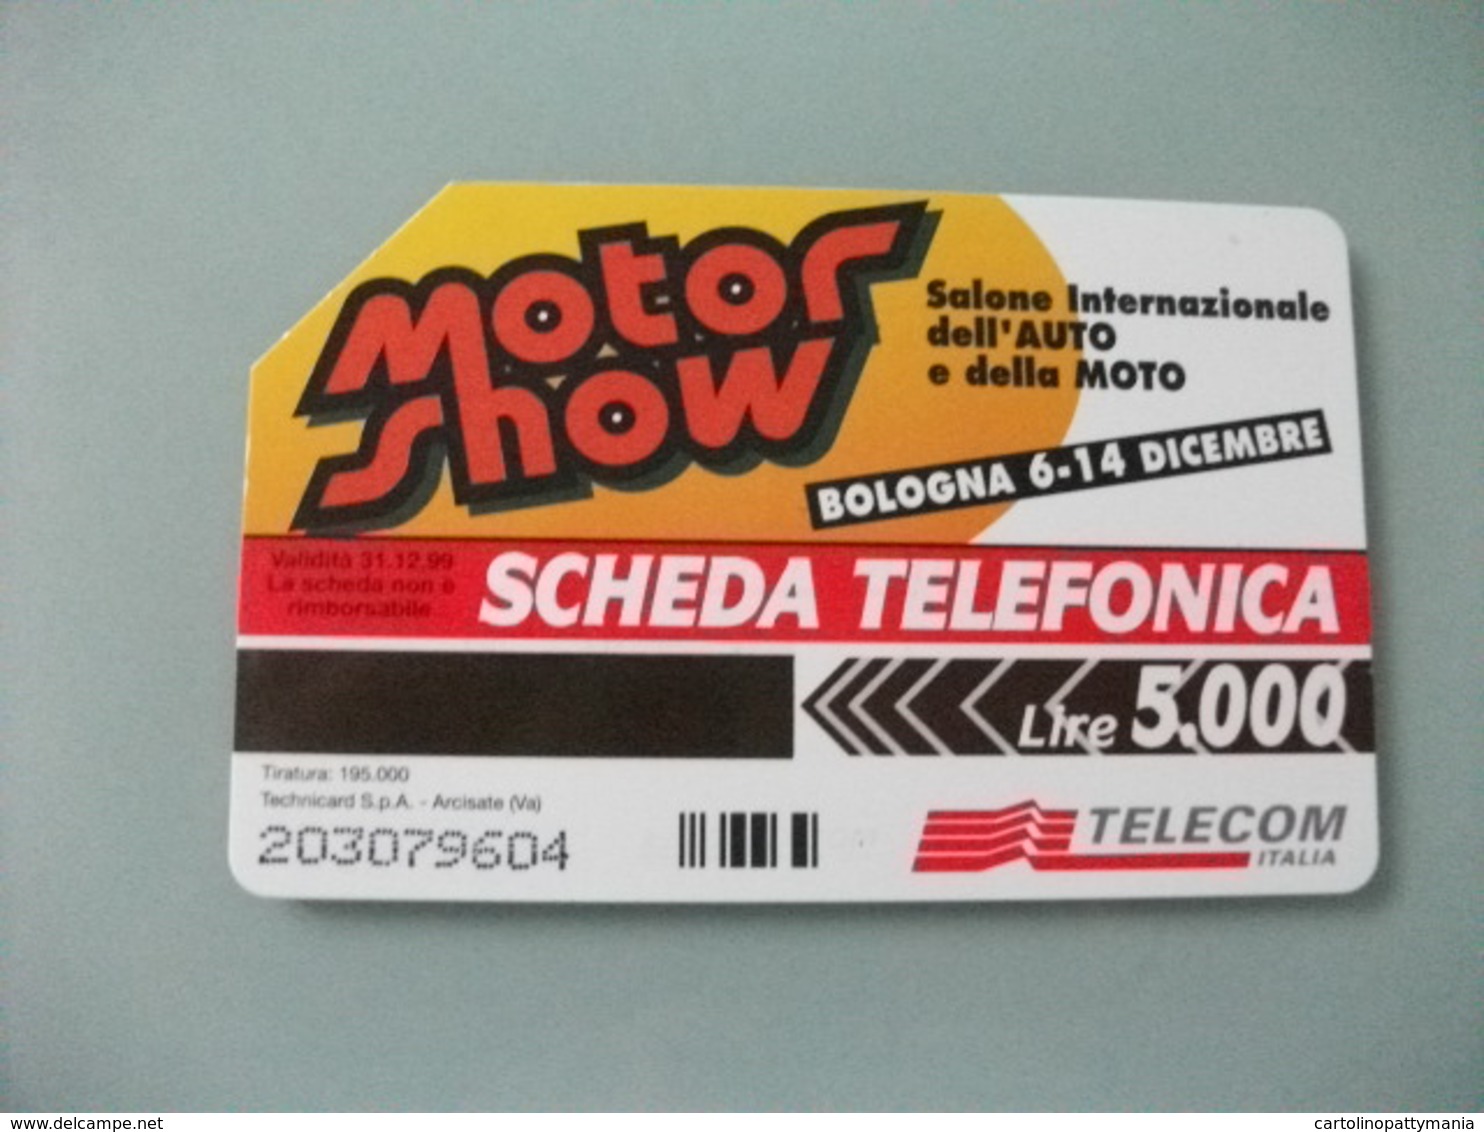 MOTORSHOW  1997 TIRATURA 195000 DEL 31 DICEMBRE 1999 TECHNICARD S.P.A. LIRE 5000 TELECOM - Pubbliche Pubblicitarie